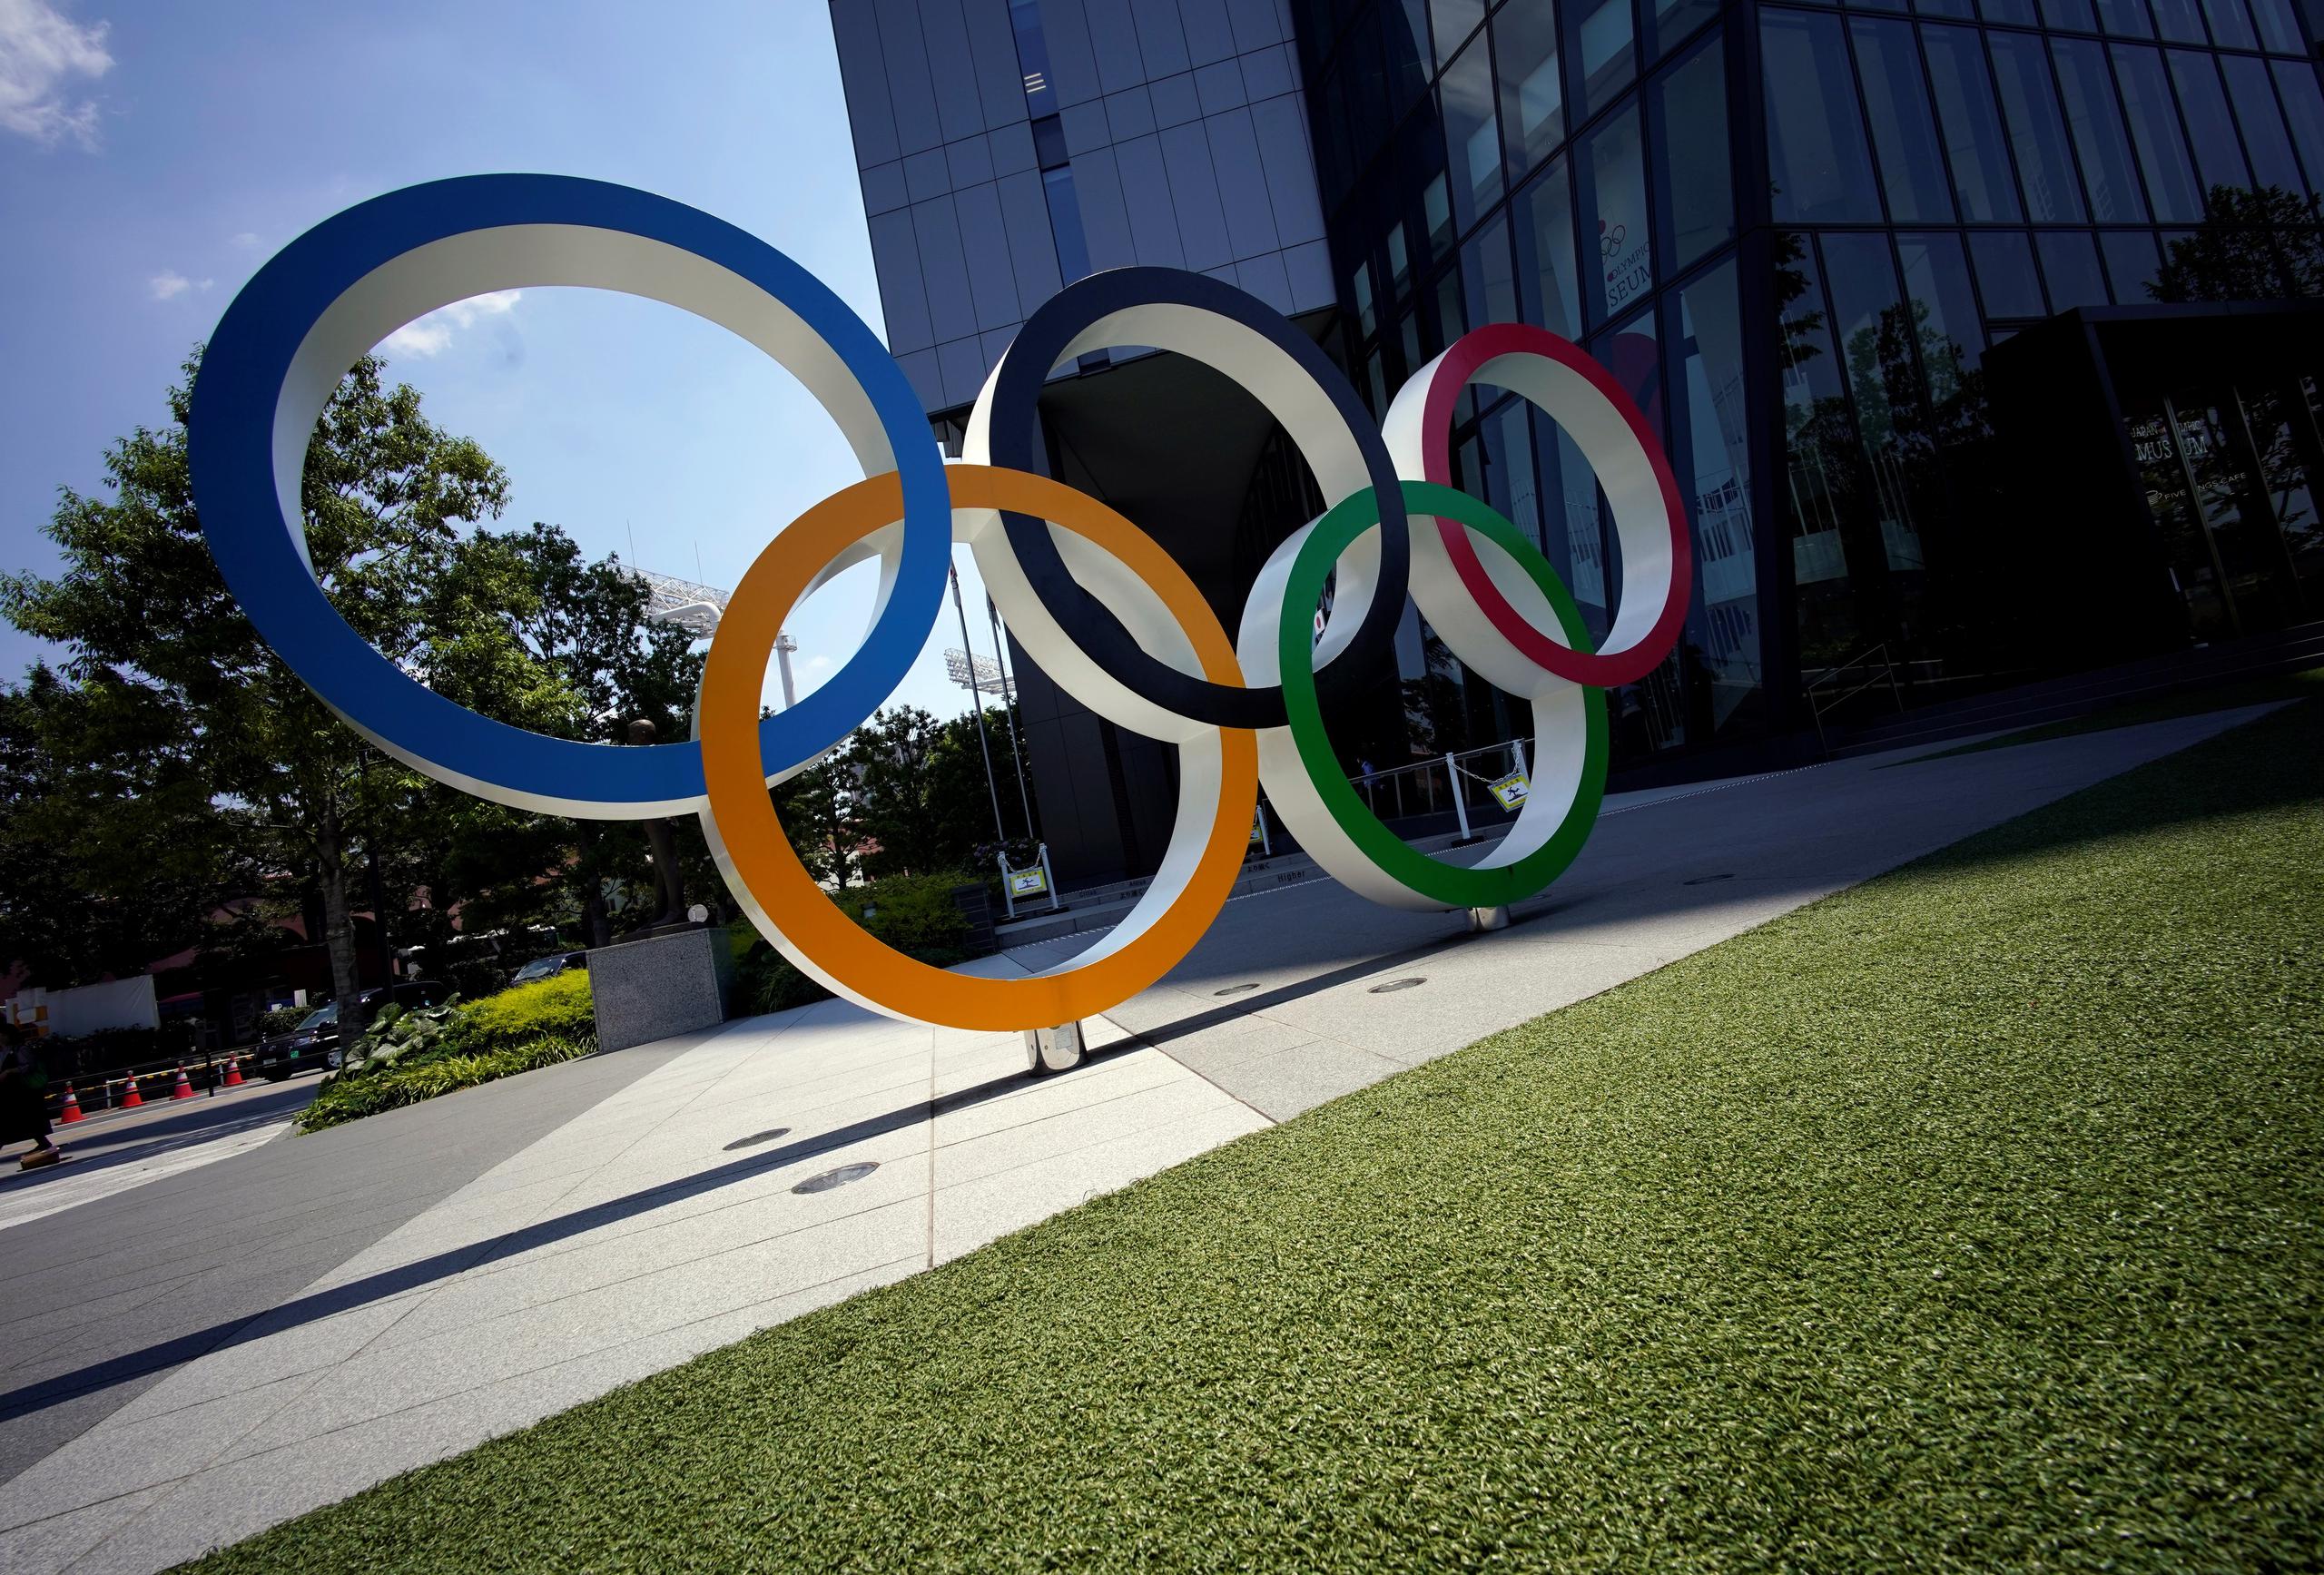 Las Olimpiadas del 2036 son las próximas disponibles para ser otorgadas, ya que las del 2032 serán en Brisbane, Australia.